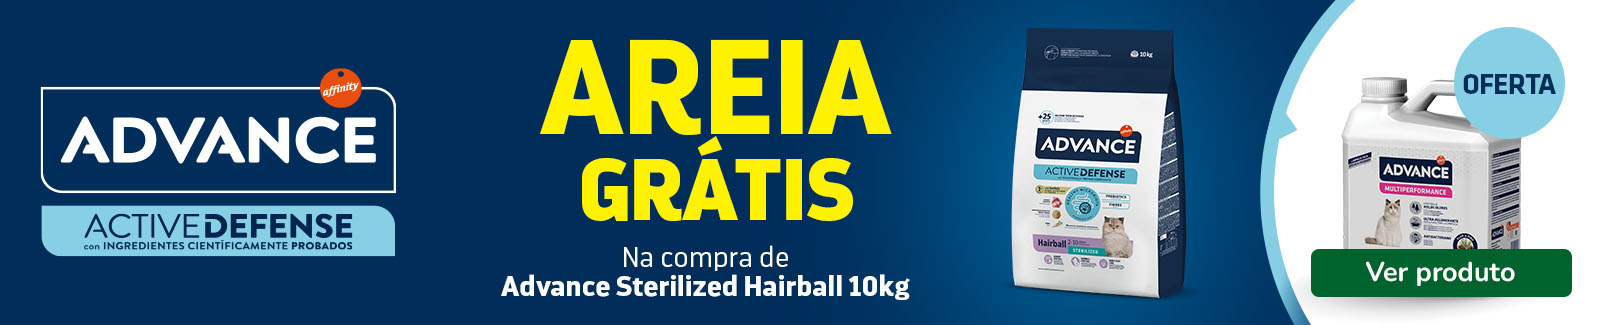 SUPER OFERTA: areia GRÁTIS com Advance Sterilized Hairball Peru e Cevada de 10kg para gatos